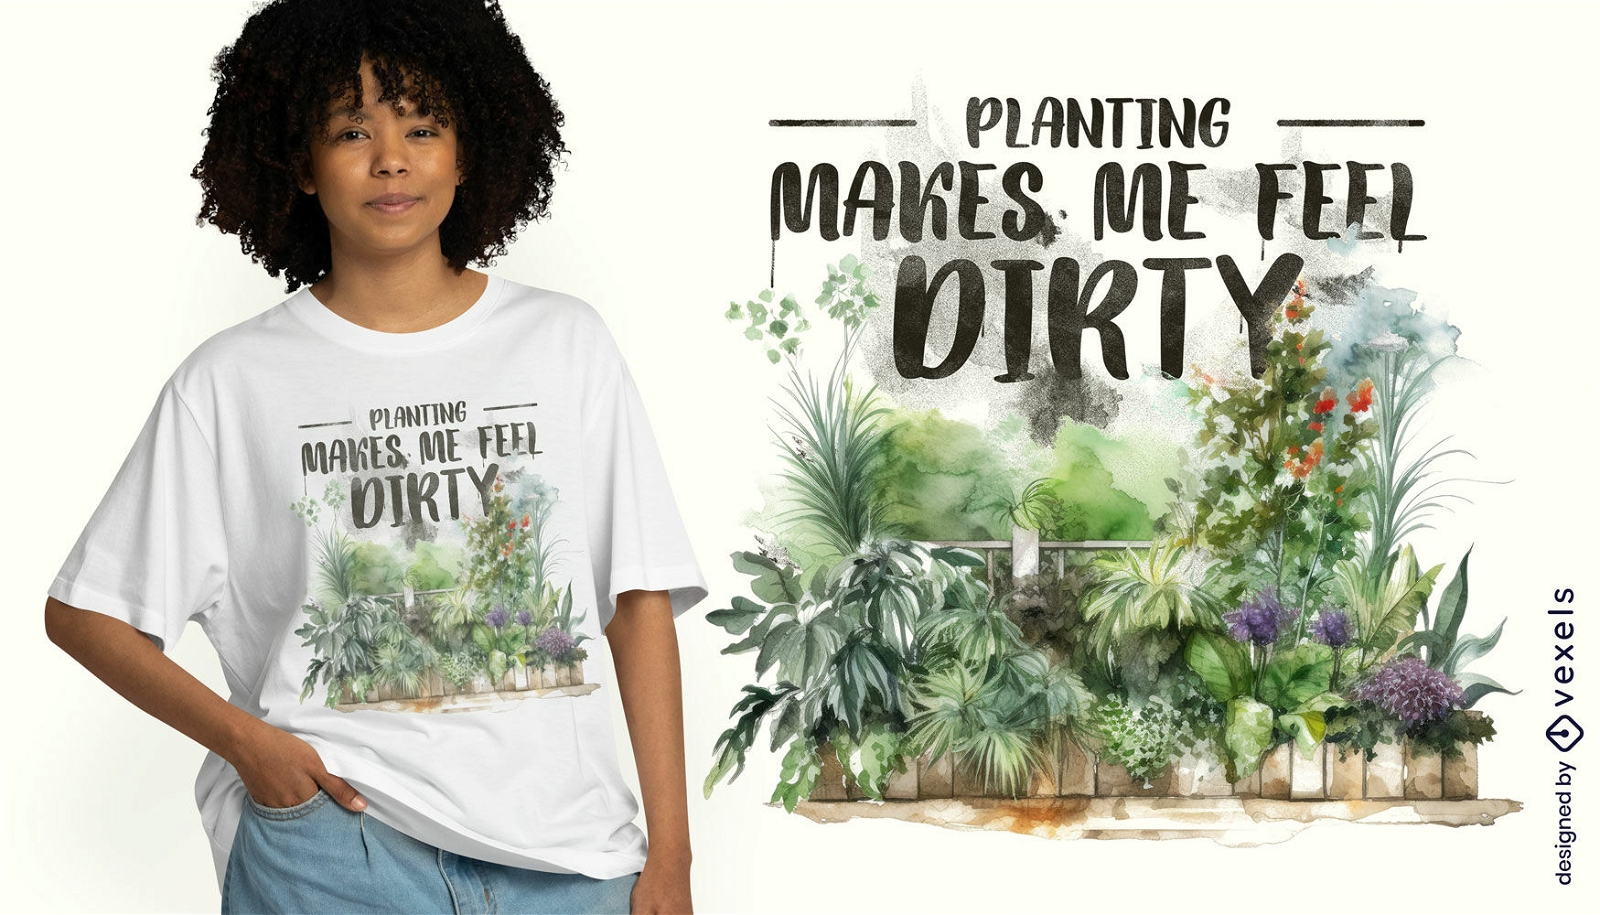 Pflanzen- und Gartenzitat-T-Shirt-Design